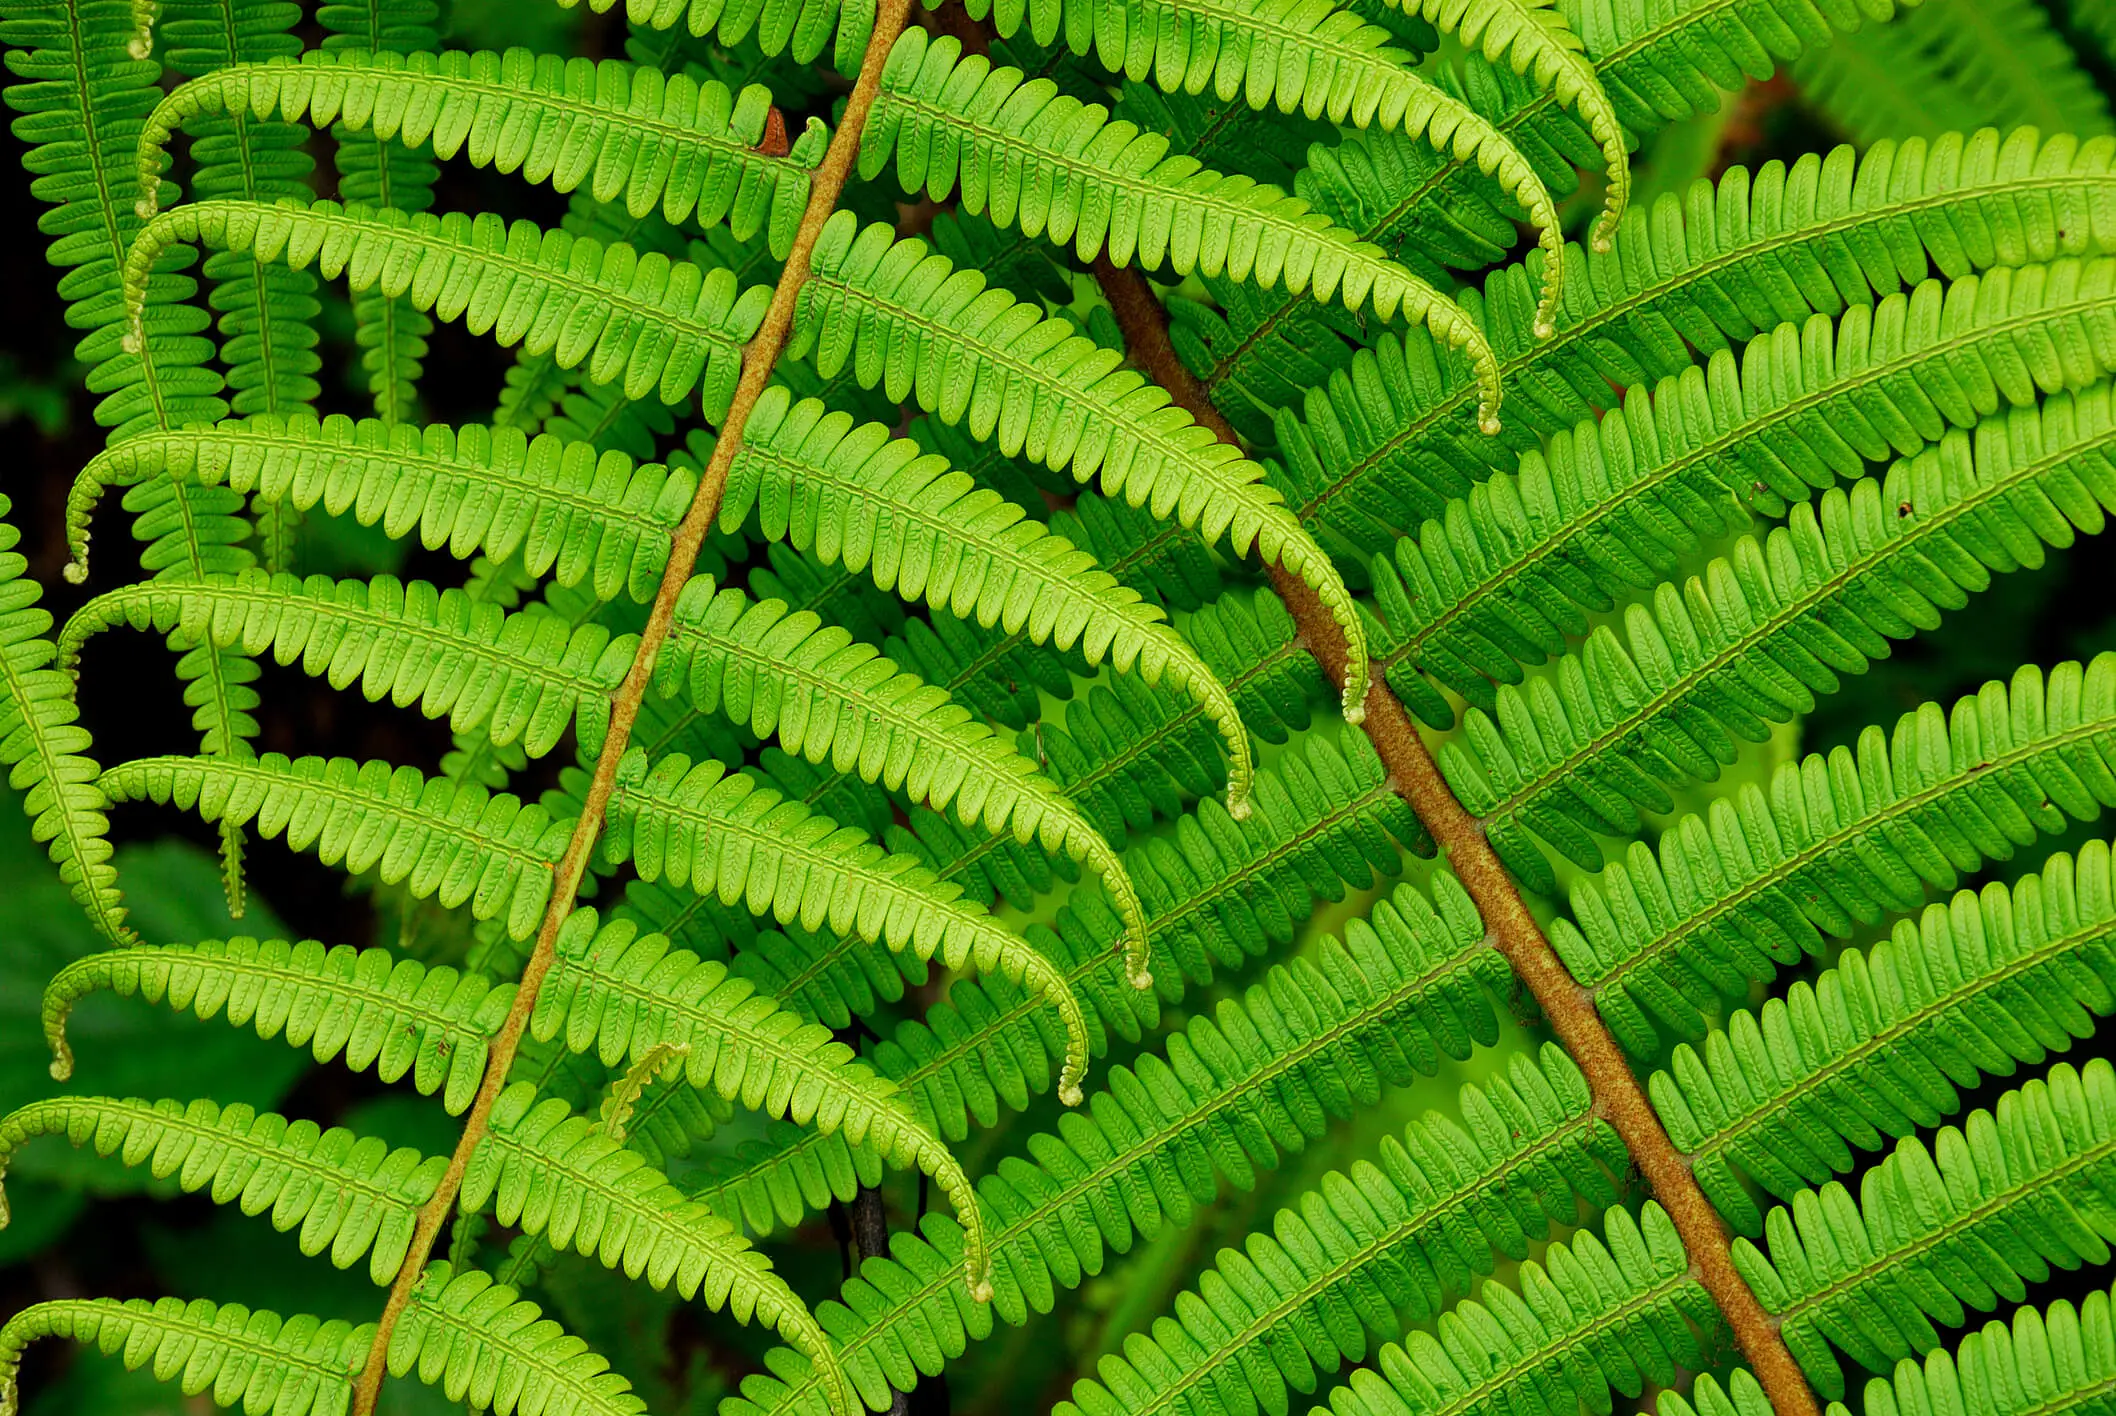 Bracken fern leaves